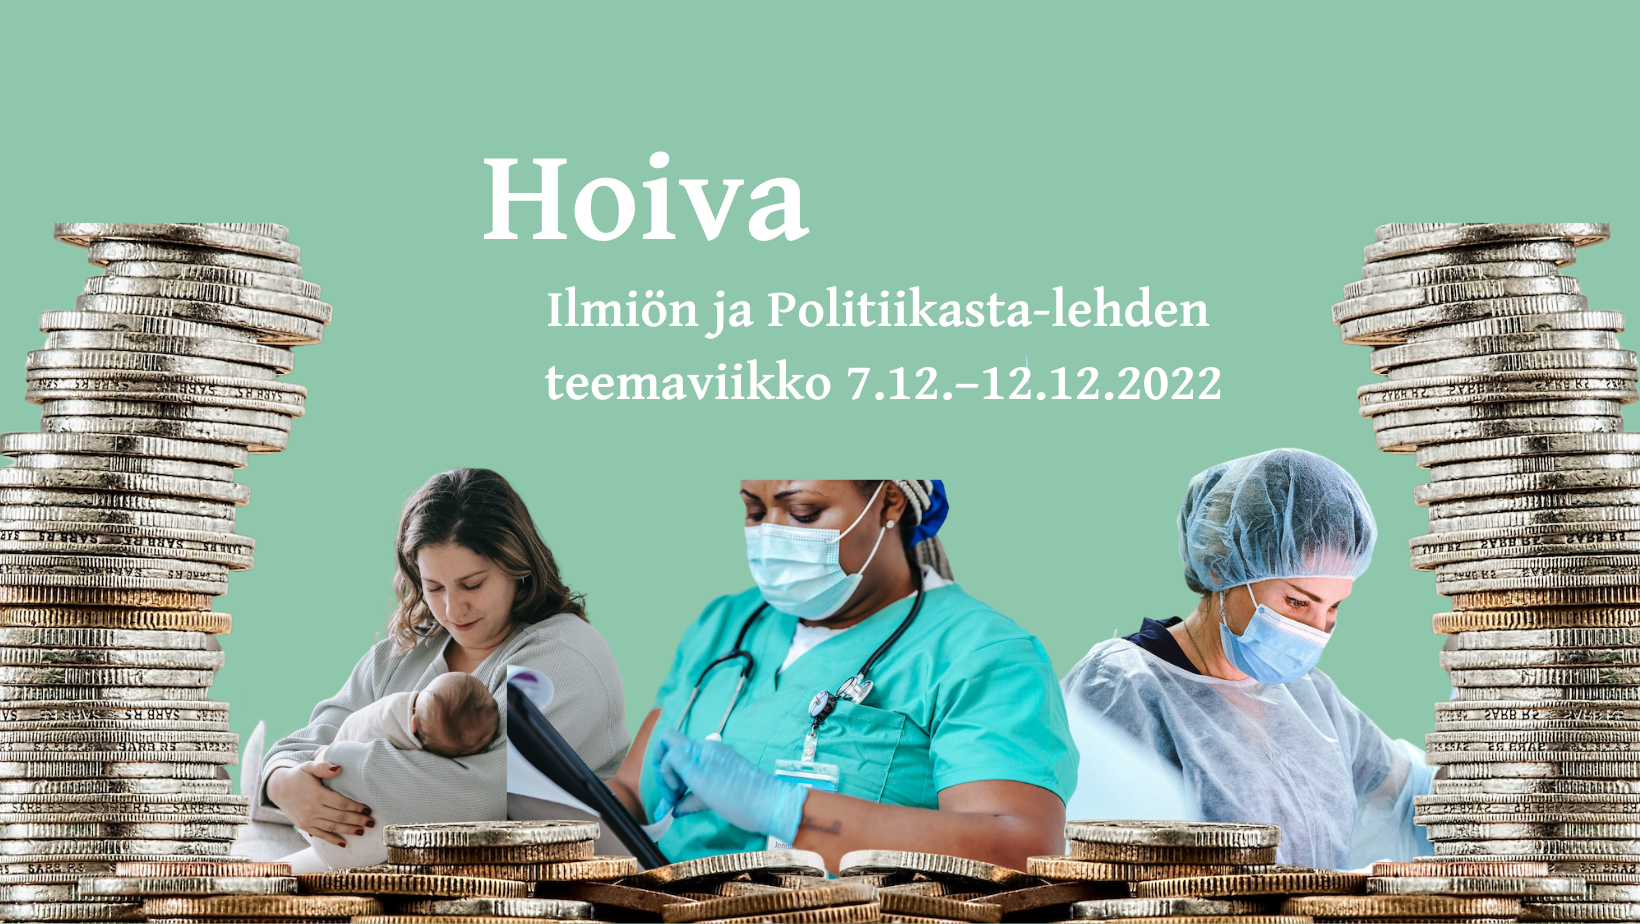 Ilmiön ja Politiikasta-lehden Hoiva-teemaviikko 7.12.–12.12.2022